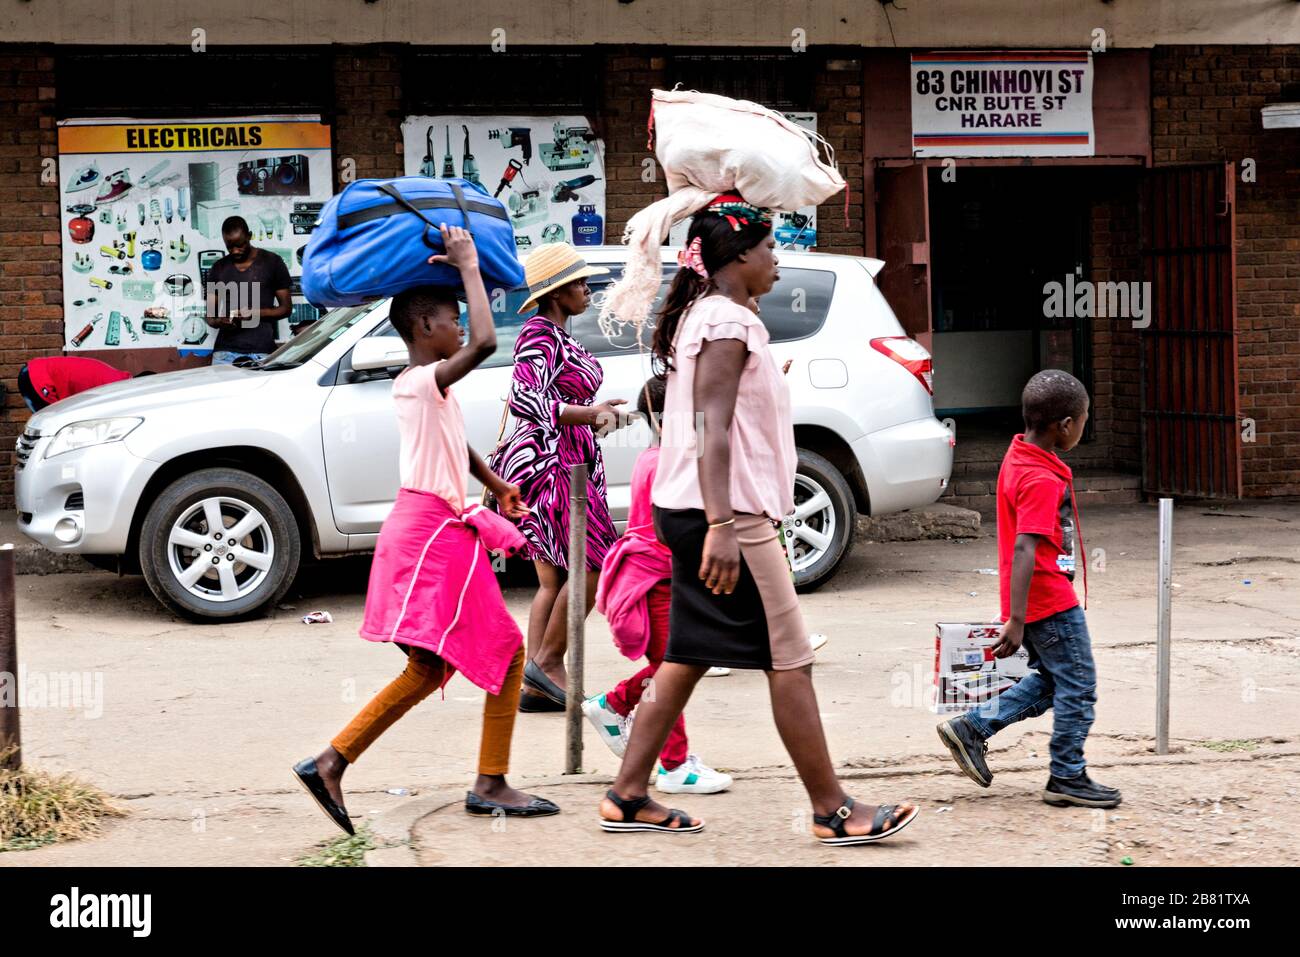 Auf dem Heimweg. Eine Gruppe von Frauen, zwei mit Taschen auf dem Kopf, folgen der Führung eines jungen Sohnes, während sie die Chinhoyi Straße in Harare entlang gehen. Stockfoto